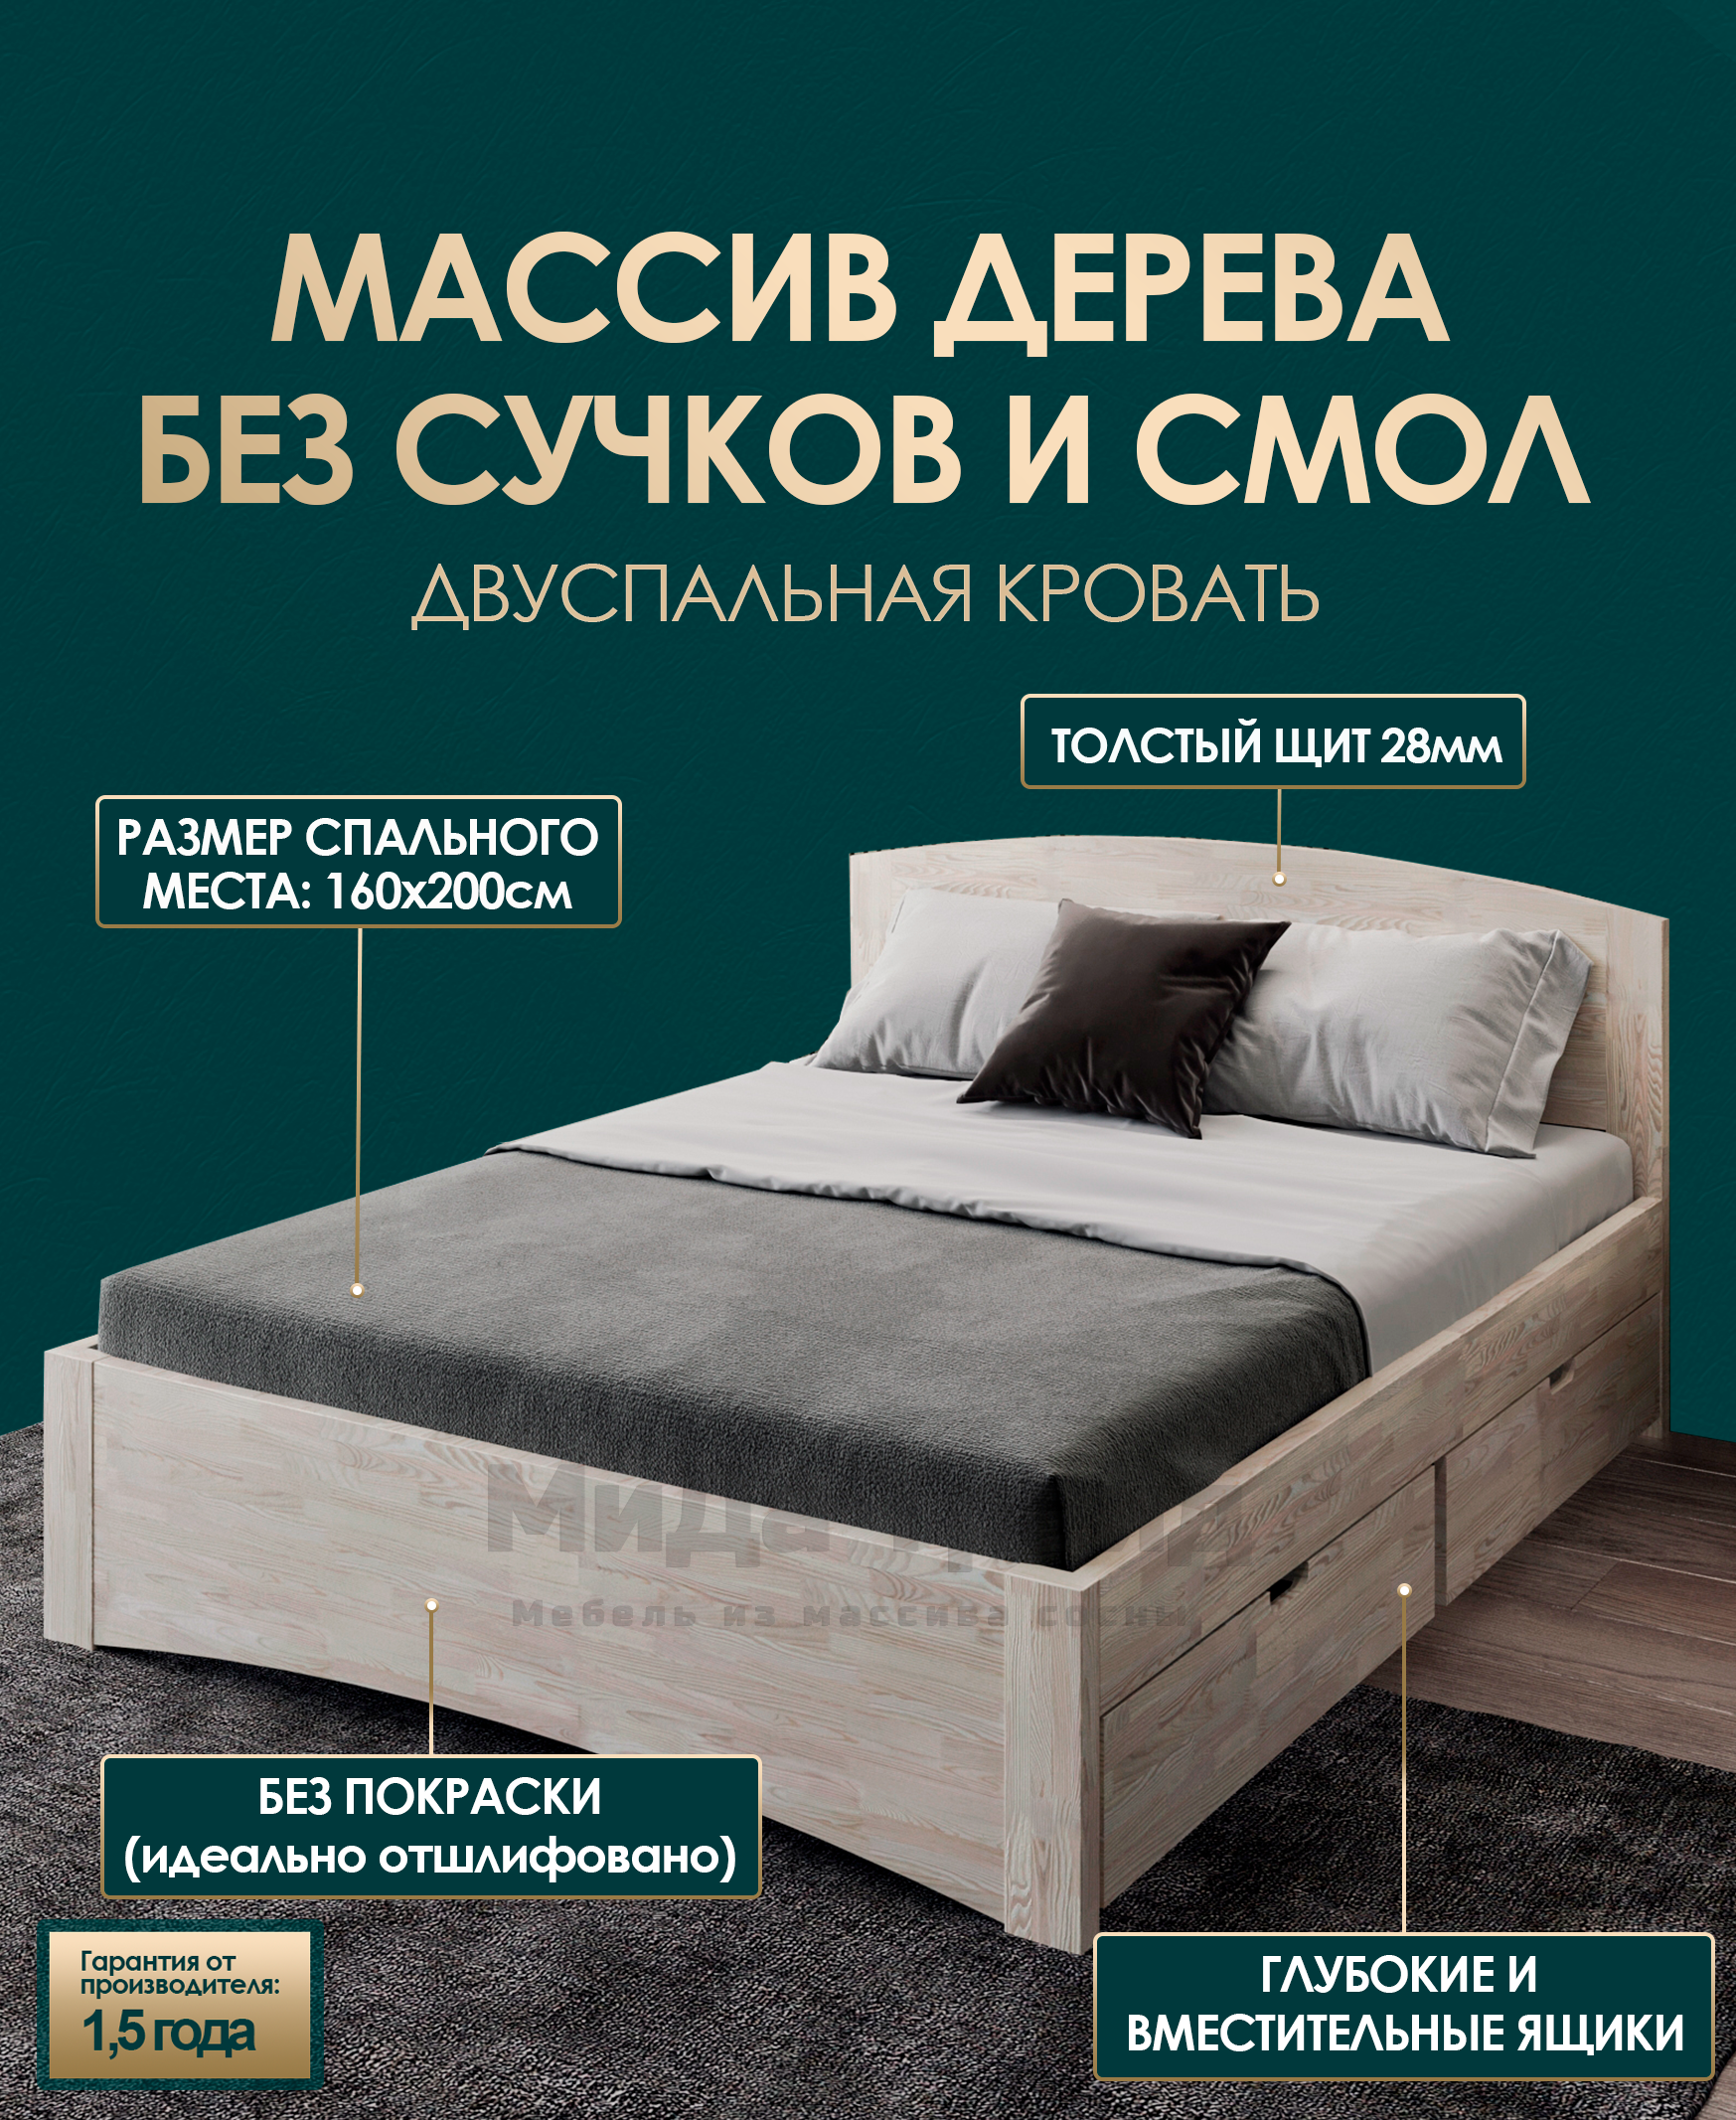 Какую кровать выбрать: 1,5 спальную или двуспальную